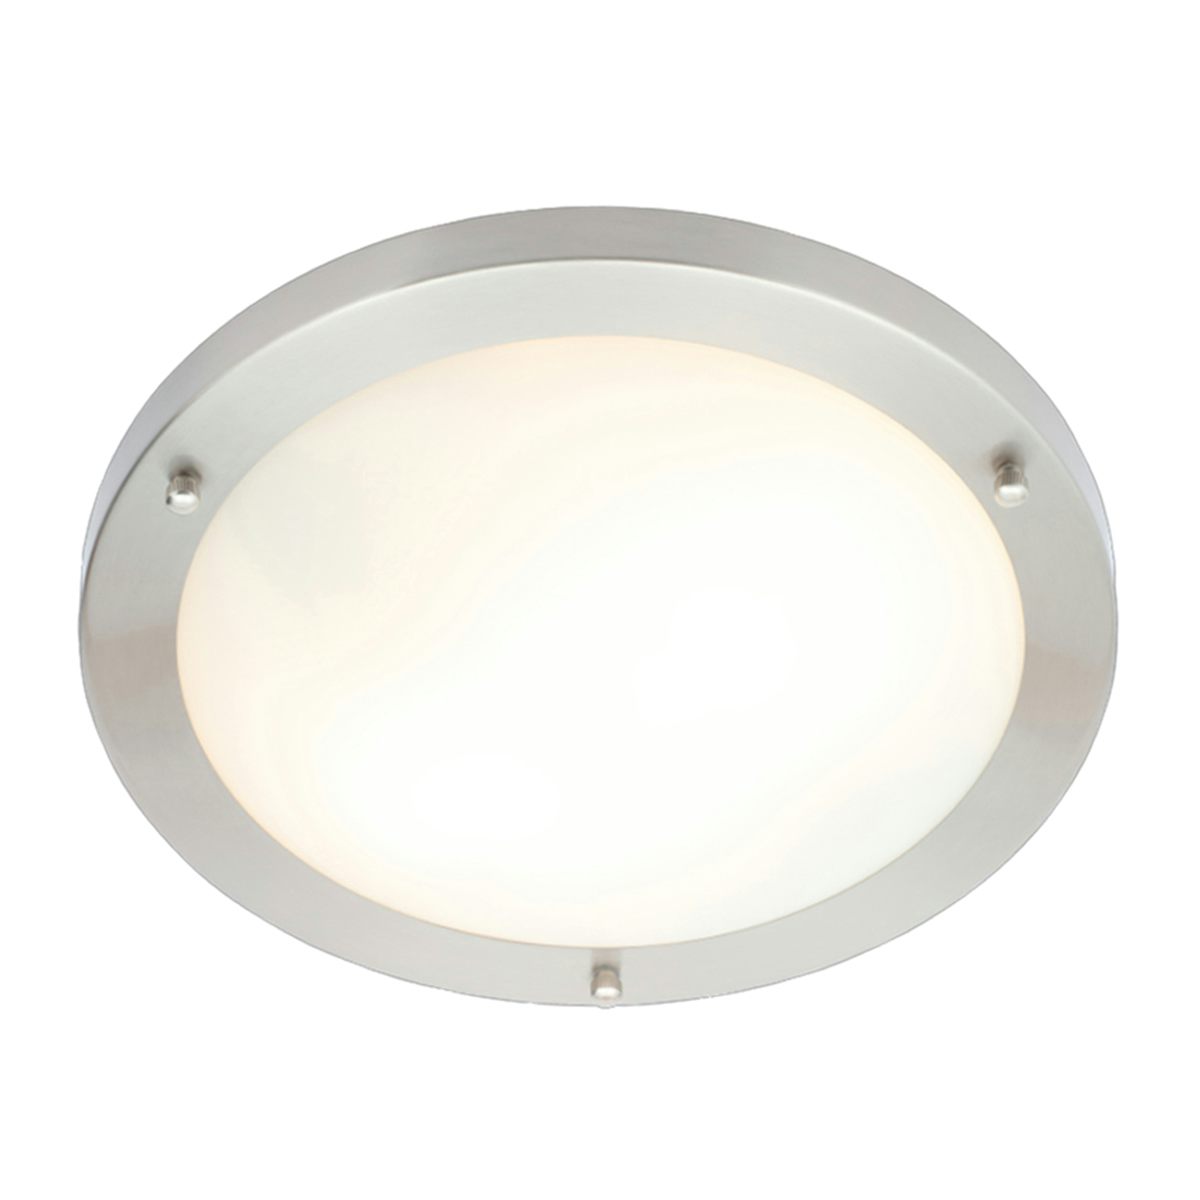 Forum Draco chrome round 2 light flush bathroom ceiling light